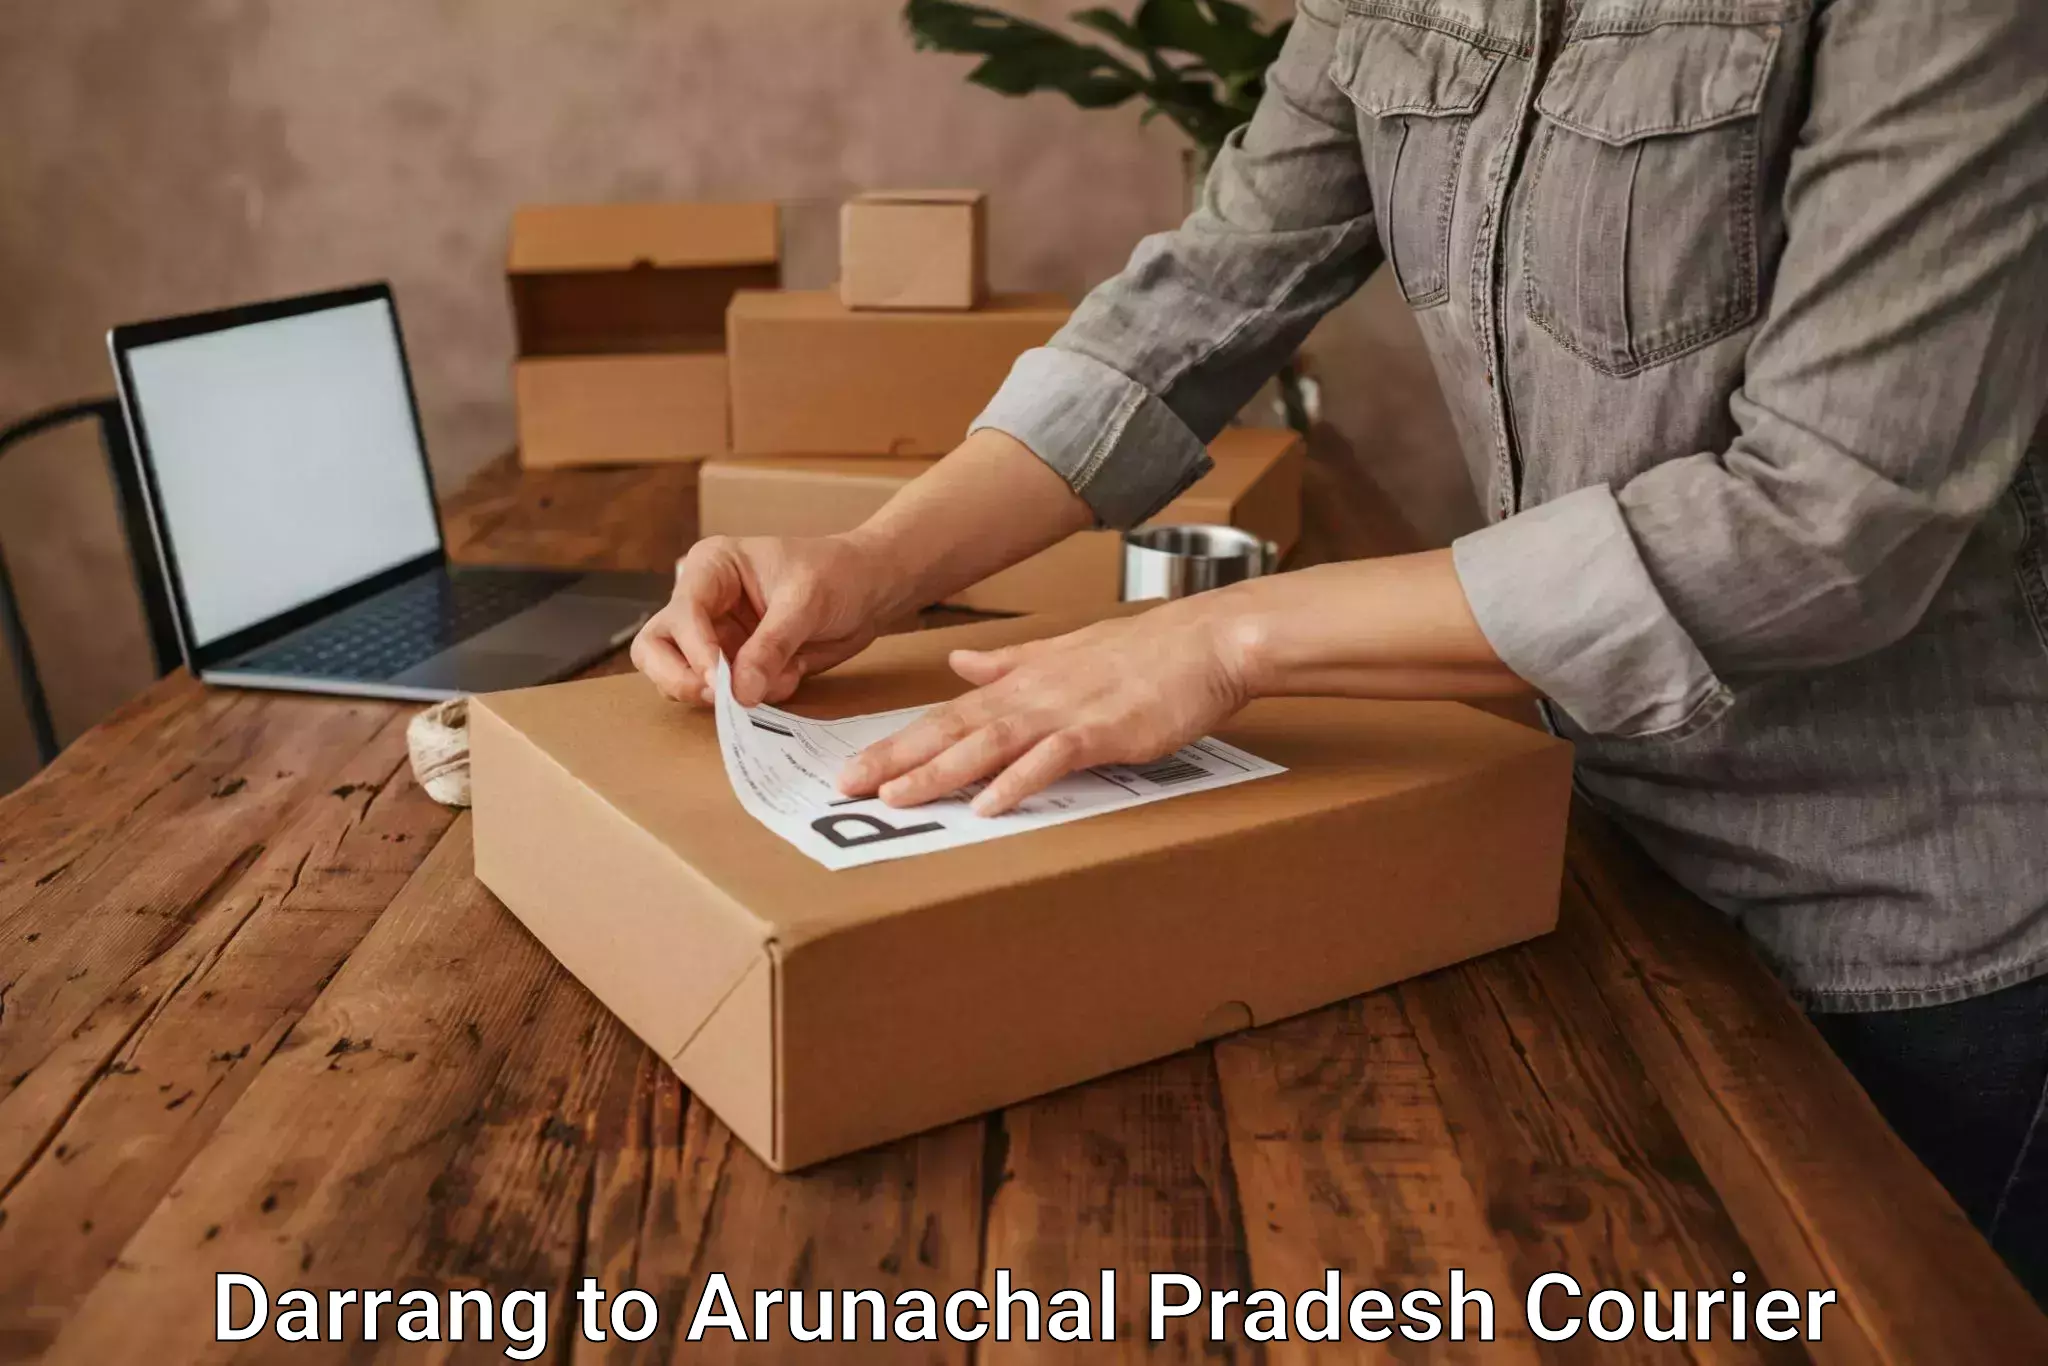 Fast delivery service Darrang to Arunachal Pradesh